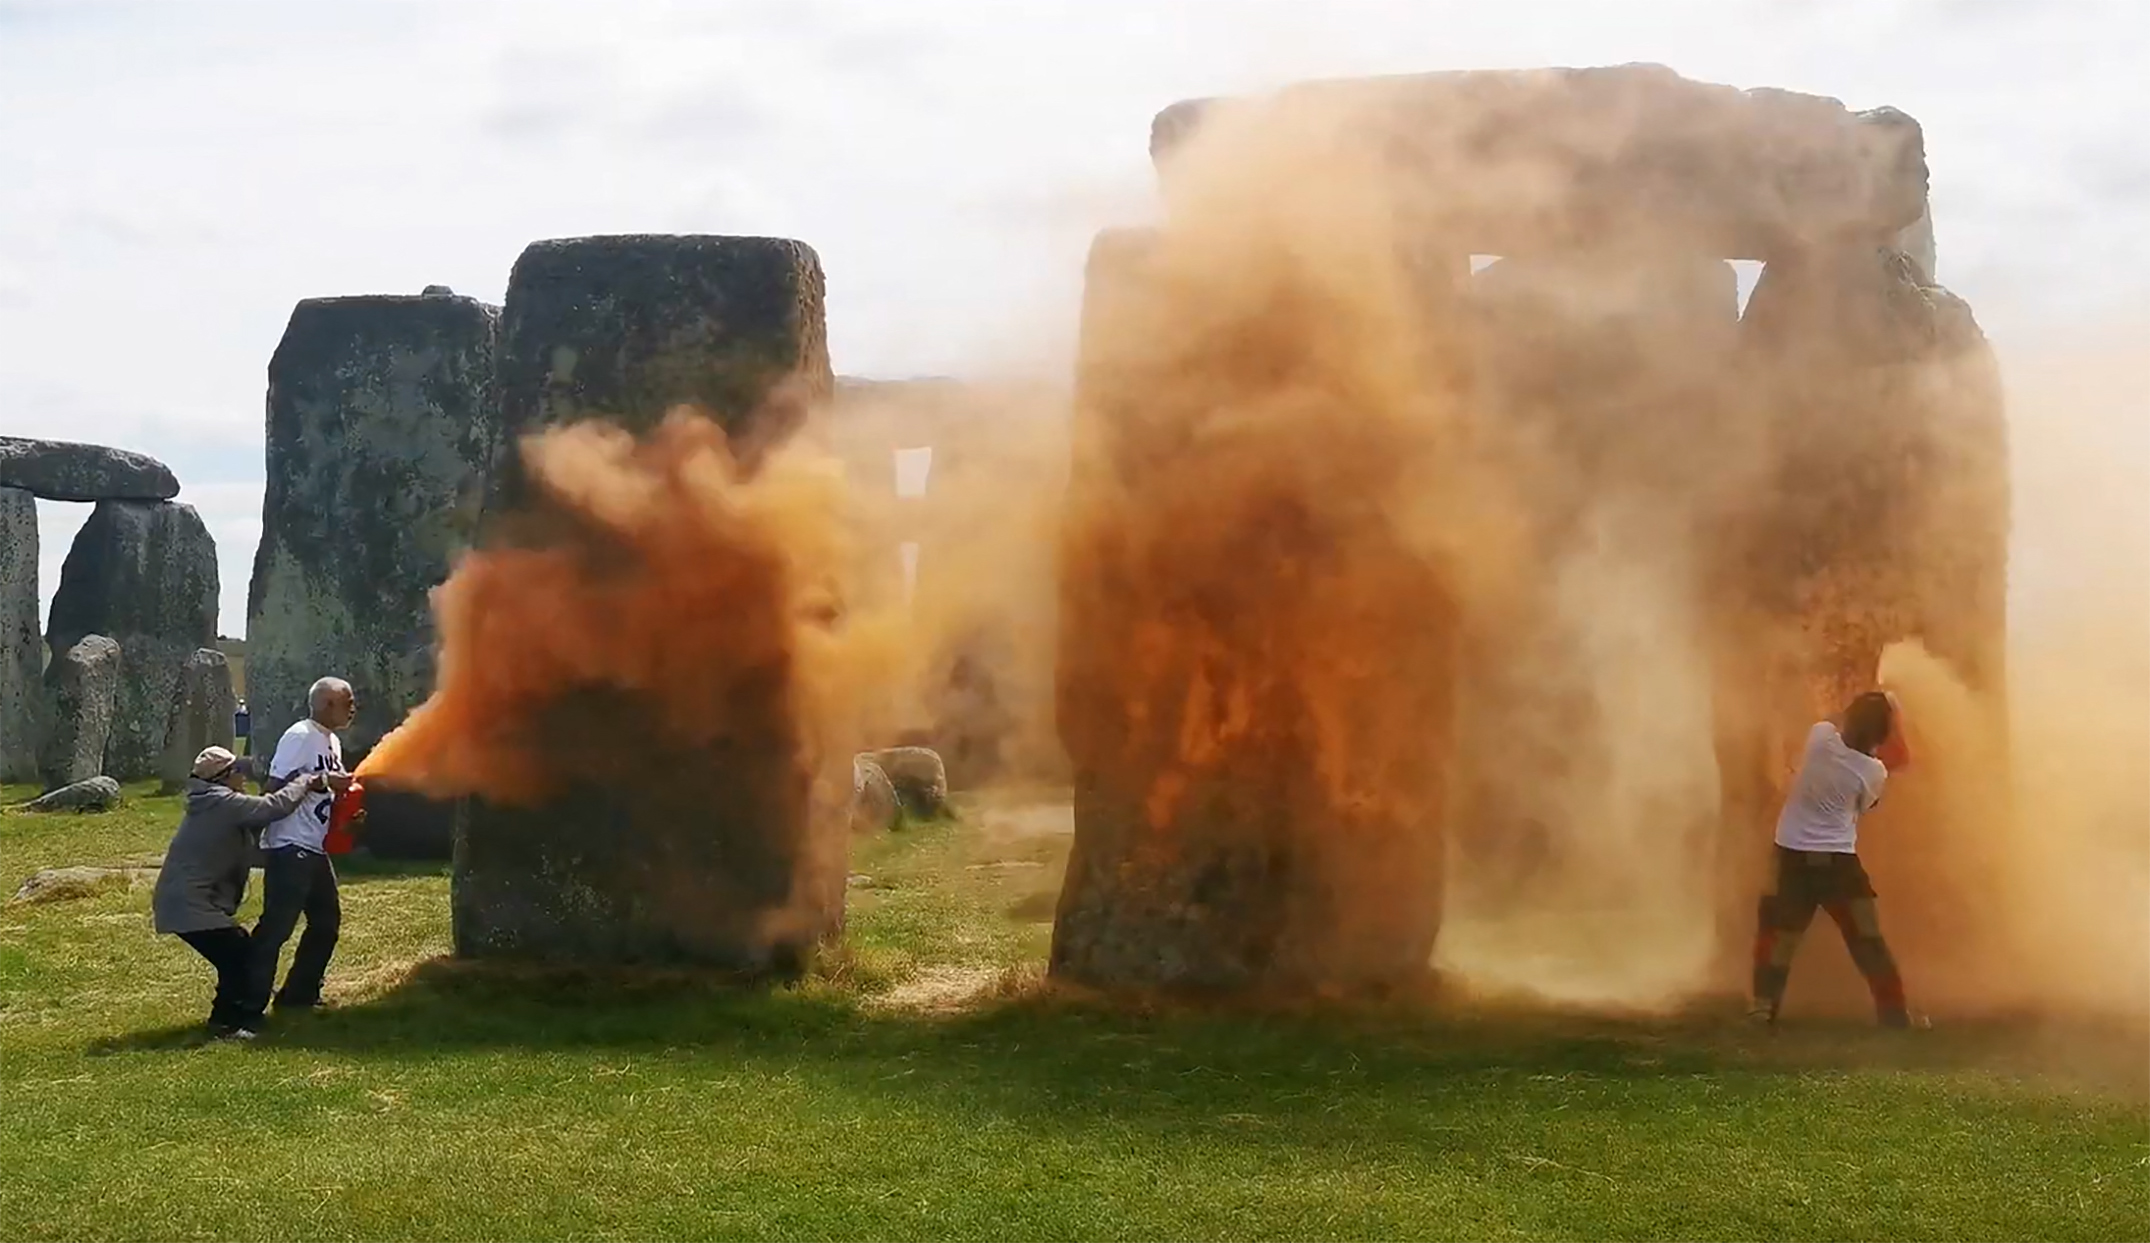 Presuntos activistas vandalizaron Stonehenge, uno de los monumentos megalíticos más importantes del mundo